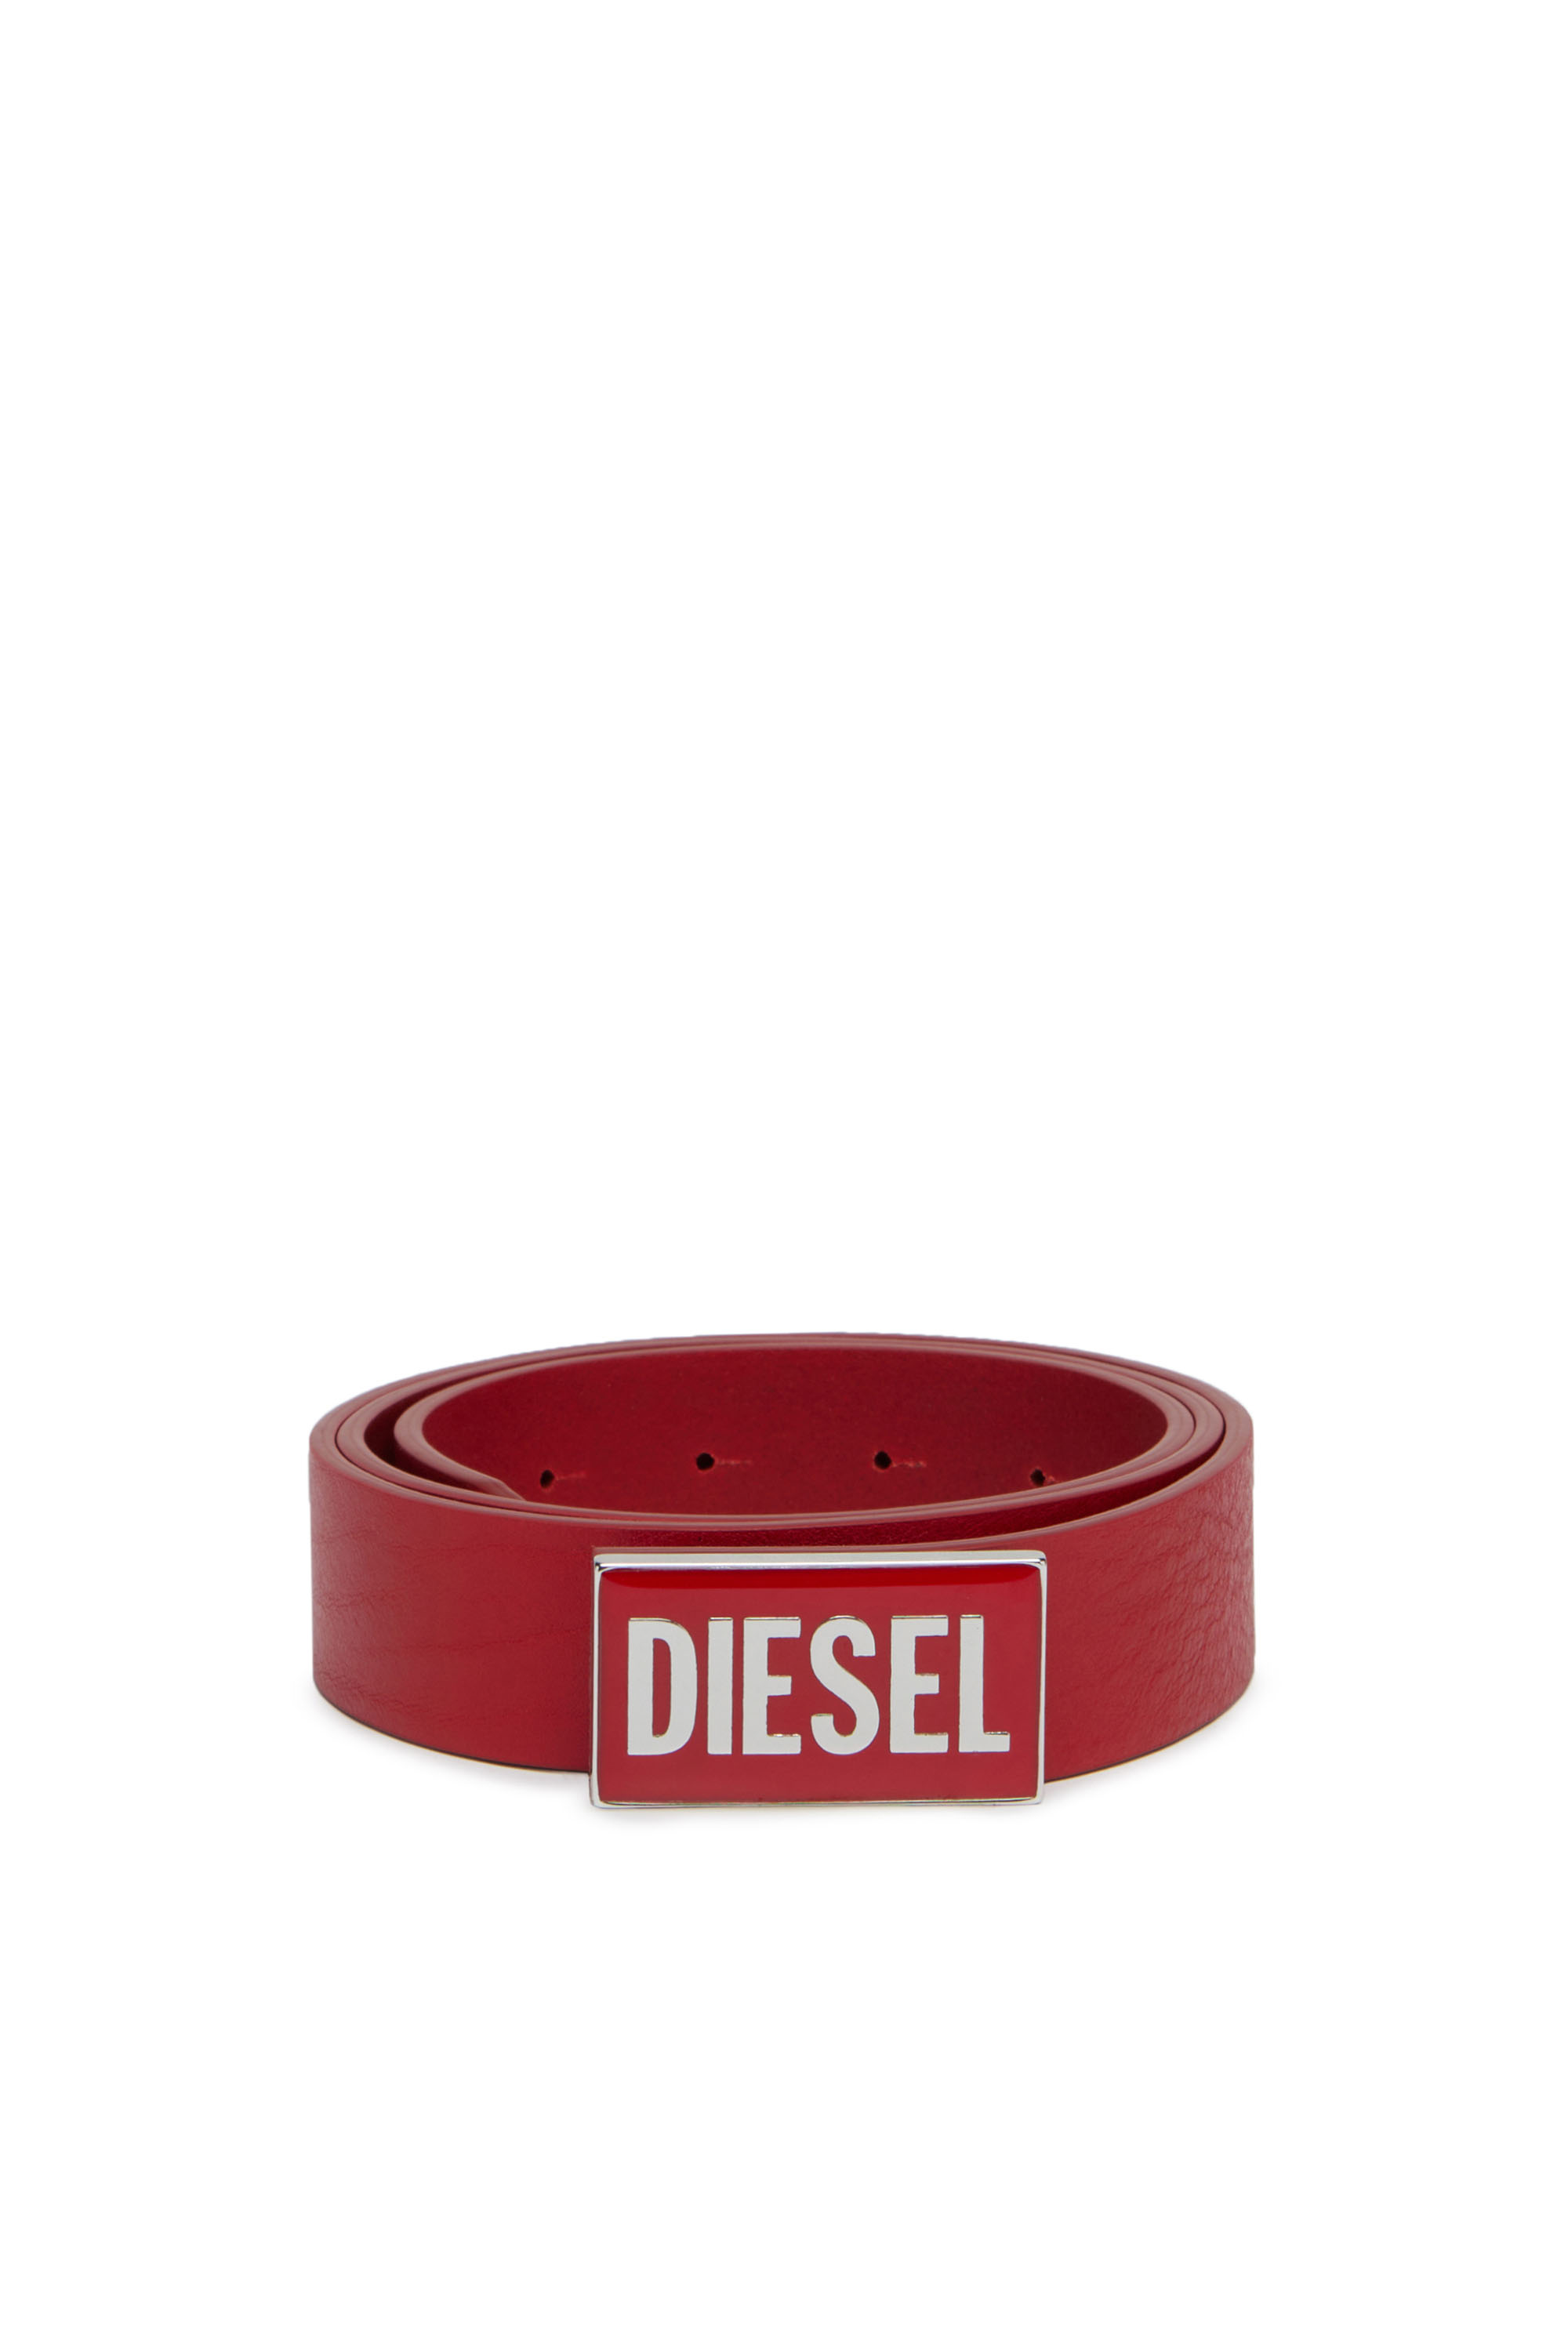 Diesel - B-GLOSSY, Rouge - Image 1